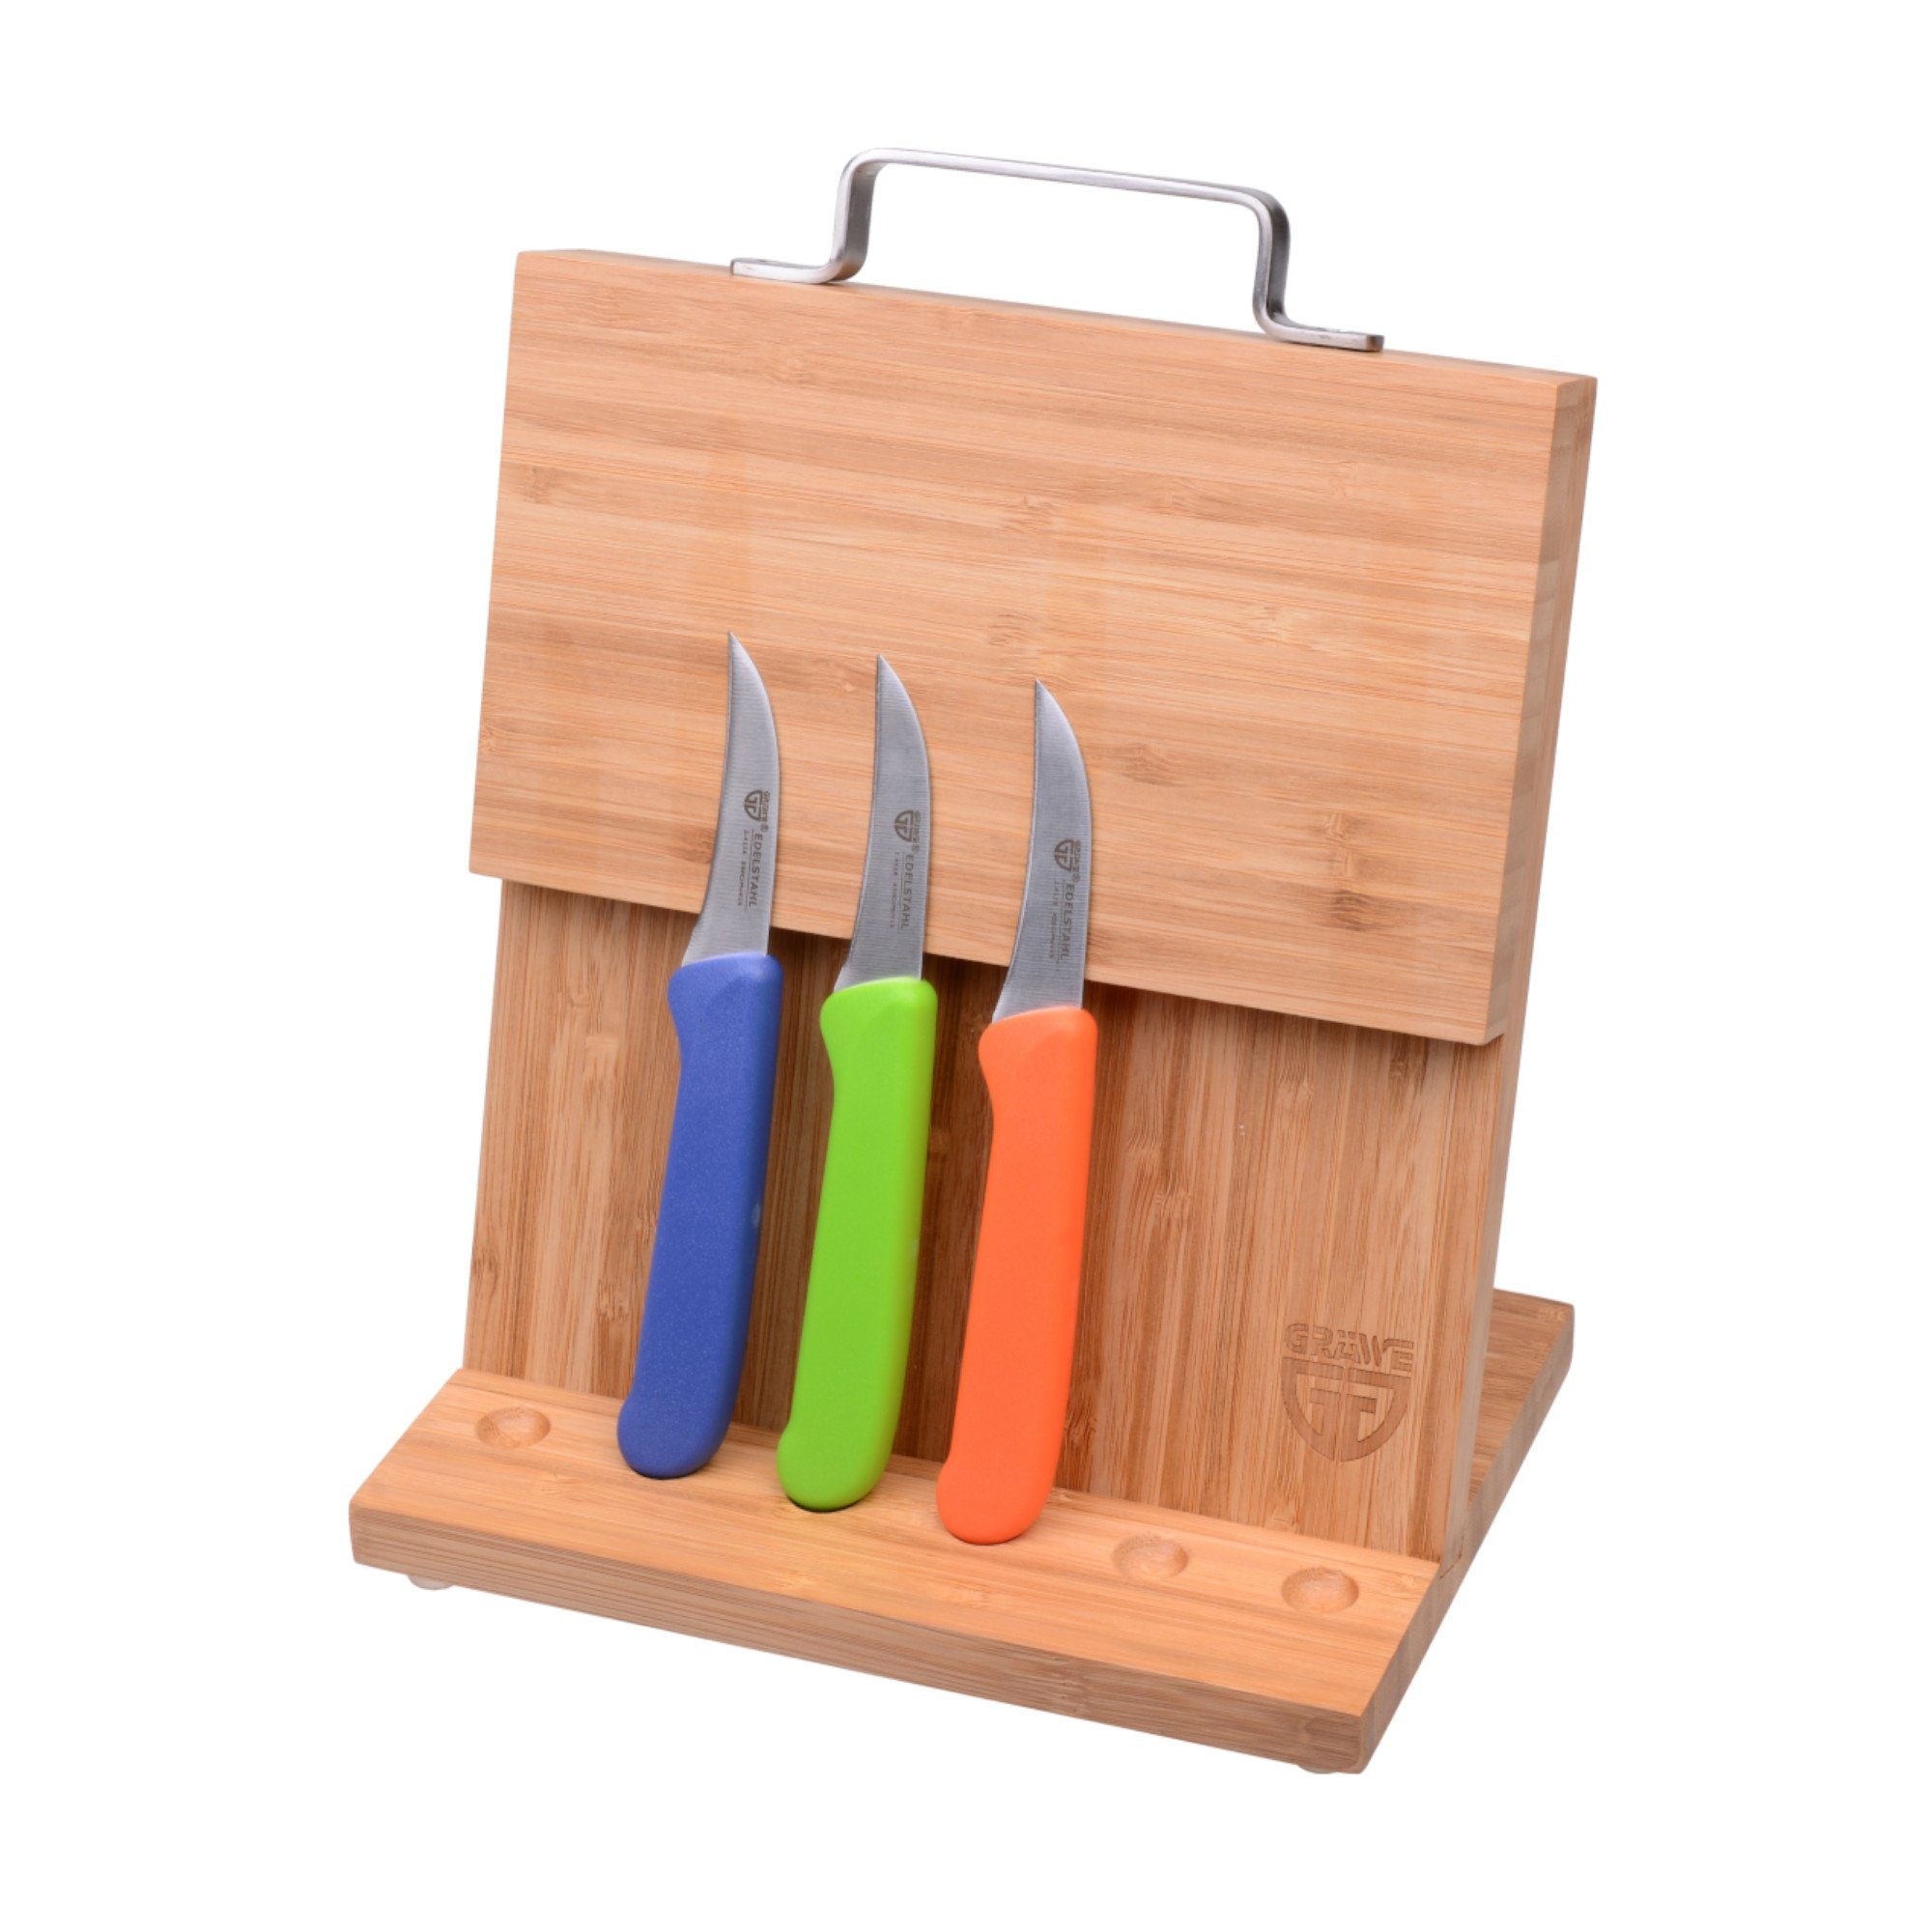 GRÄWE Messerblock GRÄWE Magnet-Messerhalter Bambus klein Bunt, Küchenmessern Natur mit